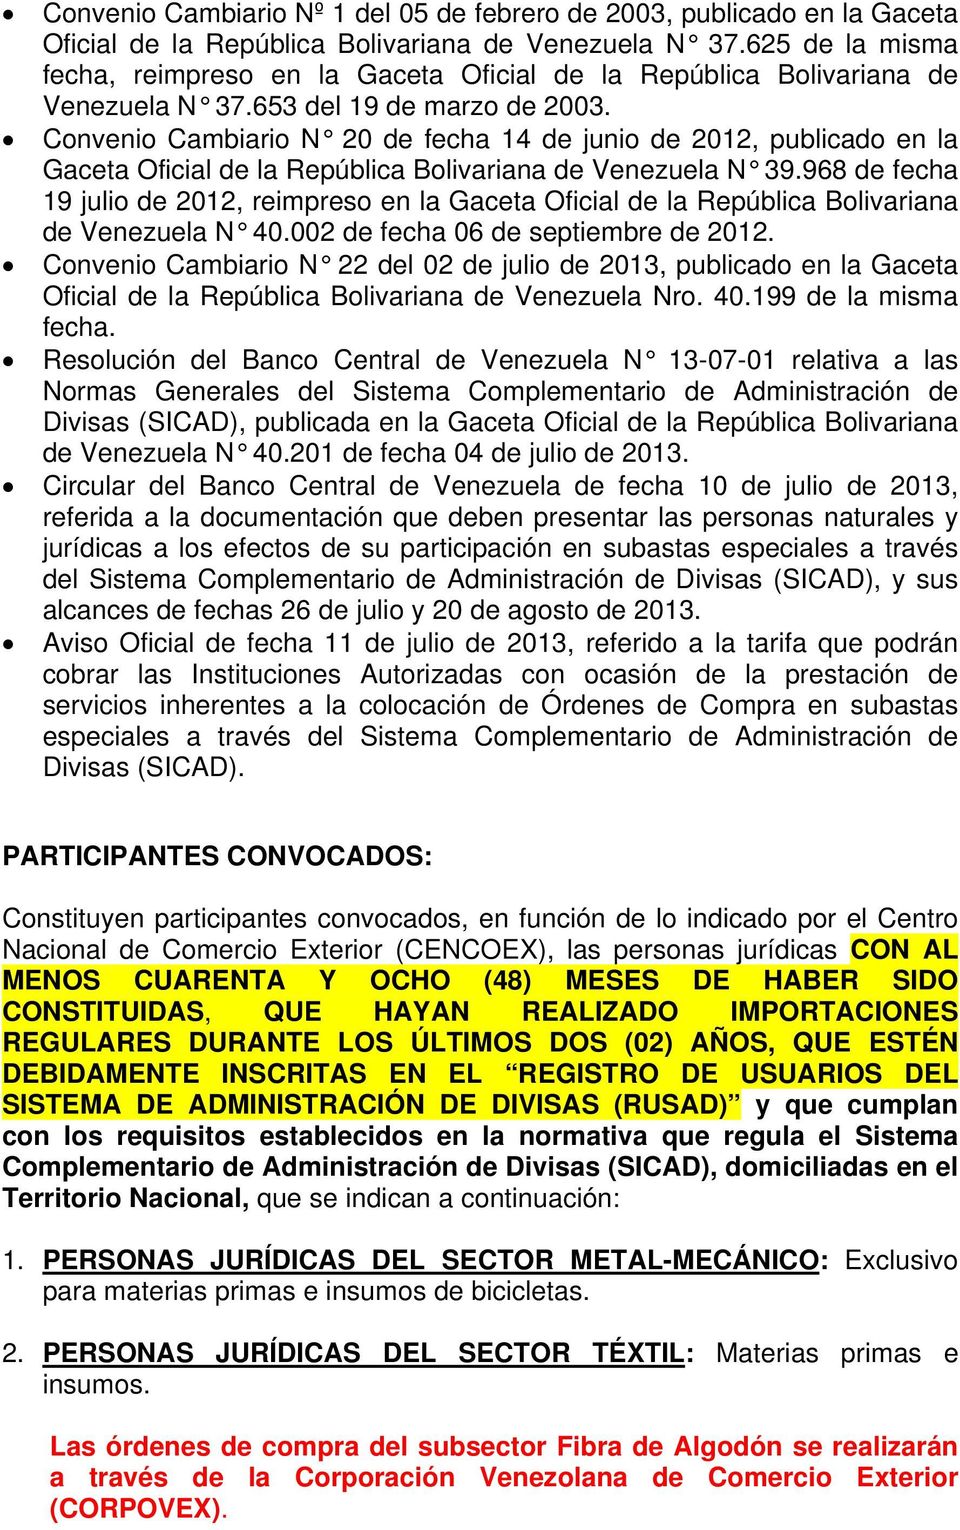 Convenio Cambiario N 20 de fecha 14 de junio de 2012, publicado en la Gaceta Oficial de la República Bolivariana de Venezuela N 39.